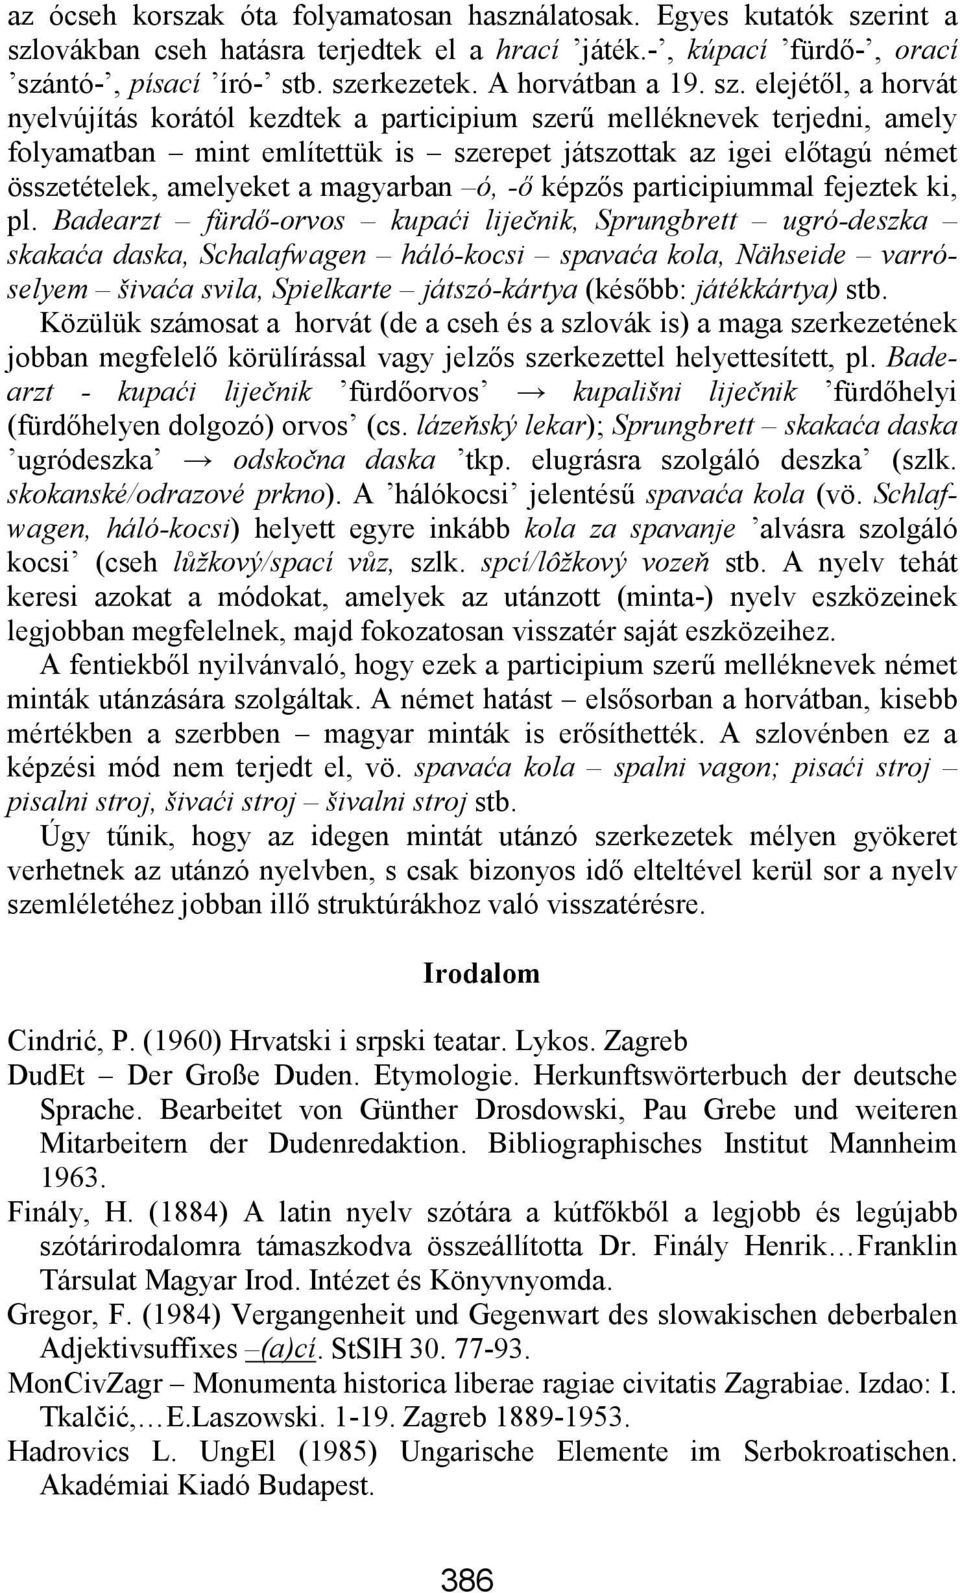 elejétől, a horvát nyelvújítás korától kezdtek a participium szerű melléknevek terjedni, amely folyamatban mint említettük is szerepet játszottak az igei előtagú német összetételek, amelyeket a